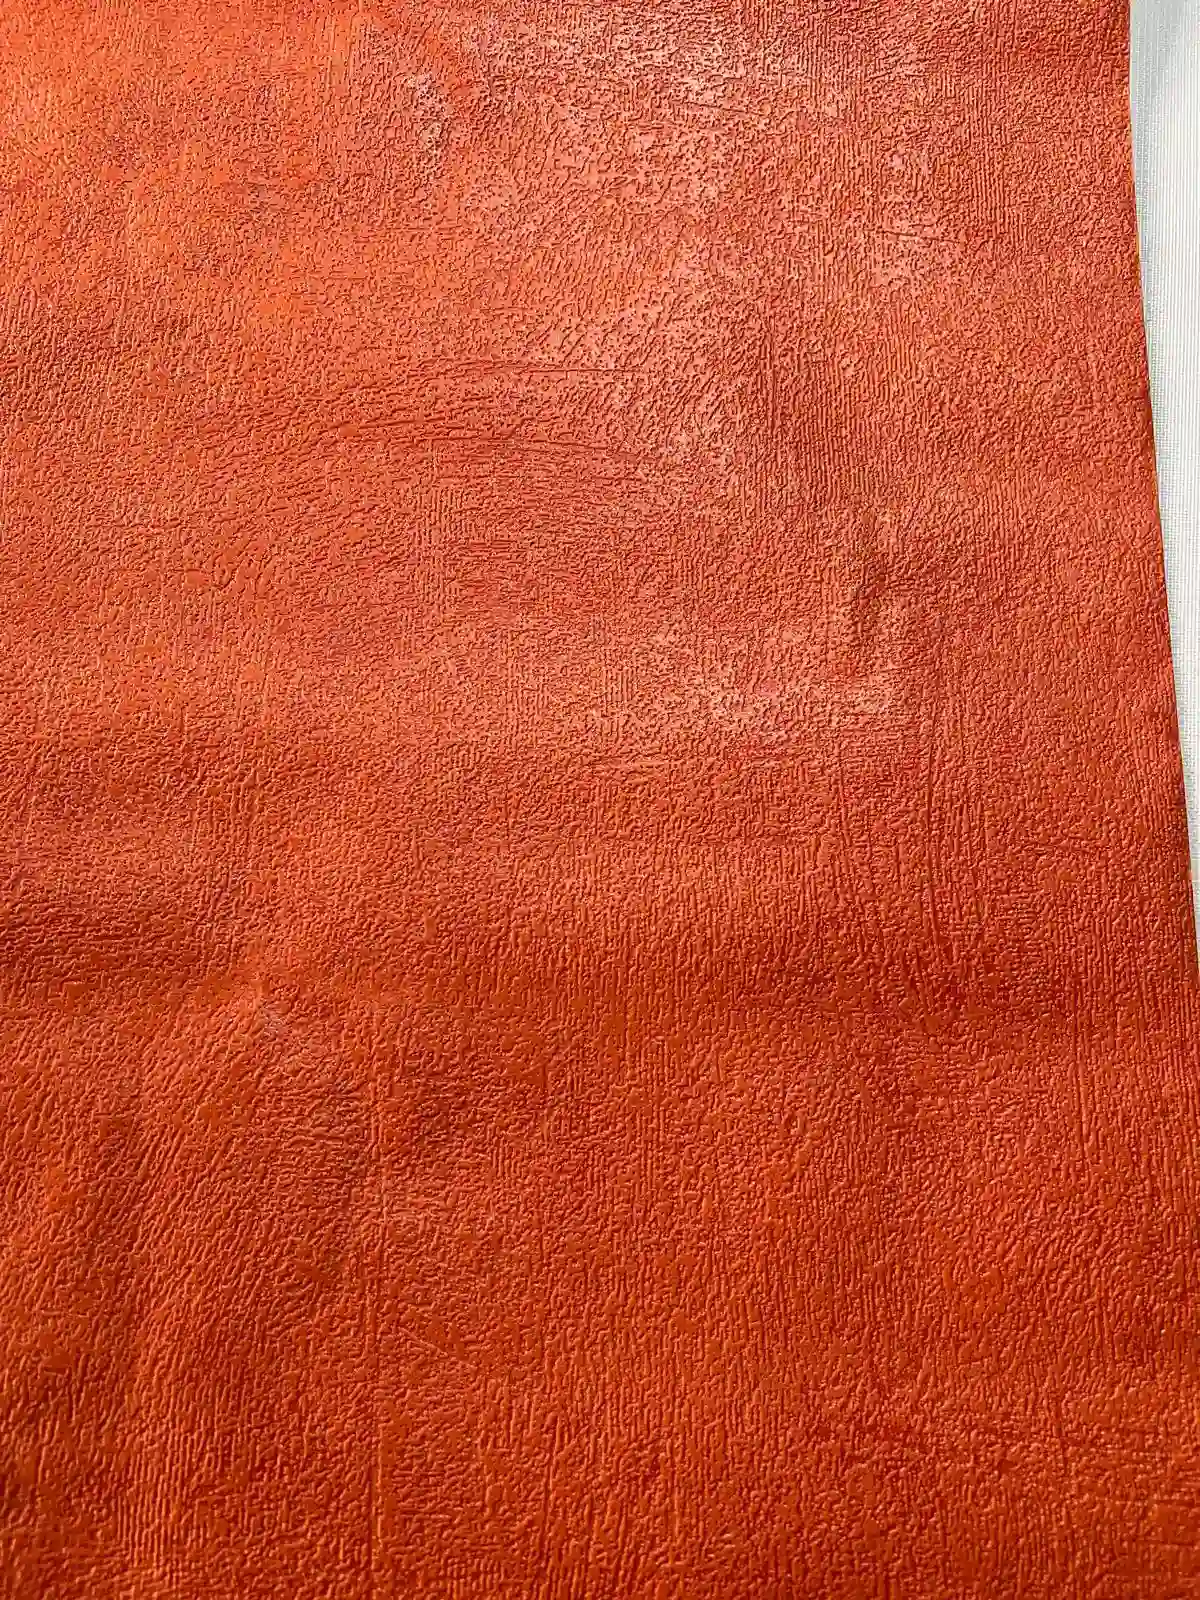 Kırmızı Parlak Sıva Desen Duvar Kağıdı 54252